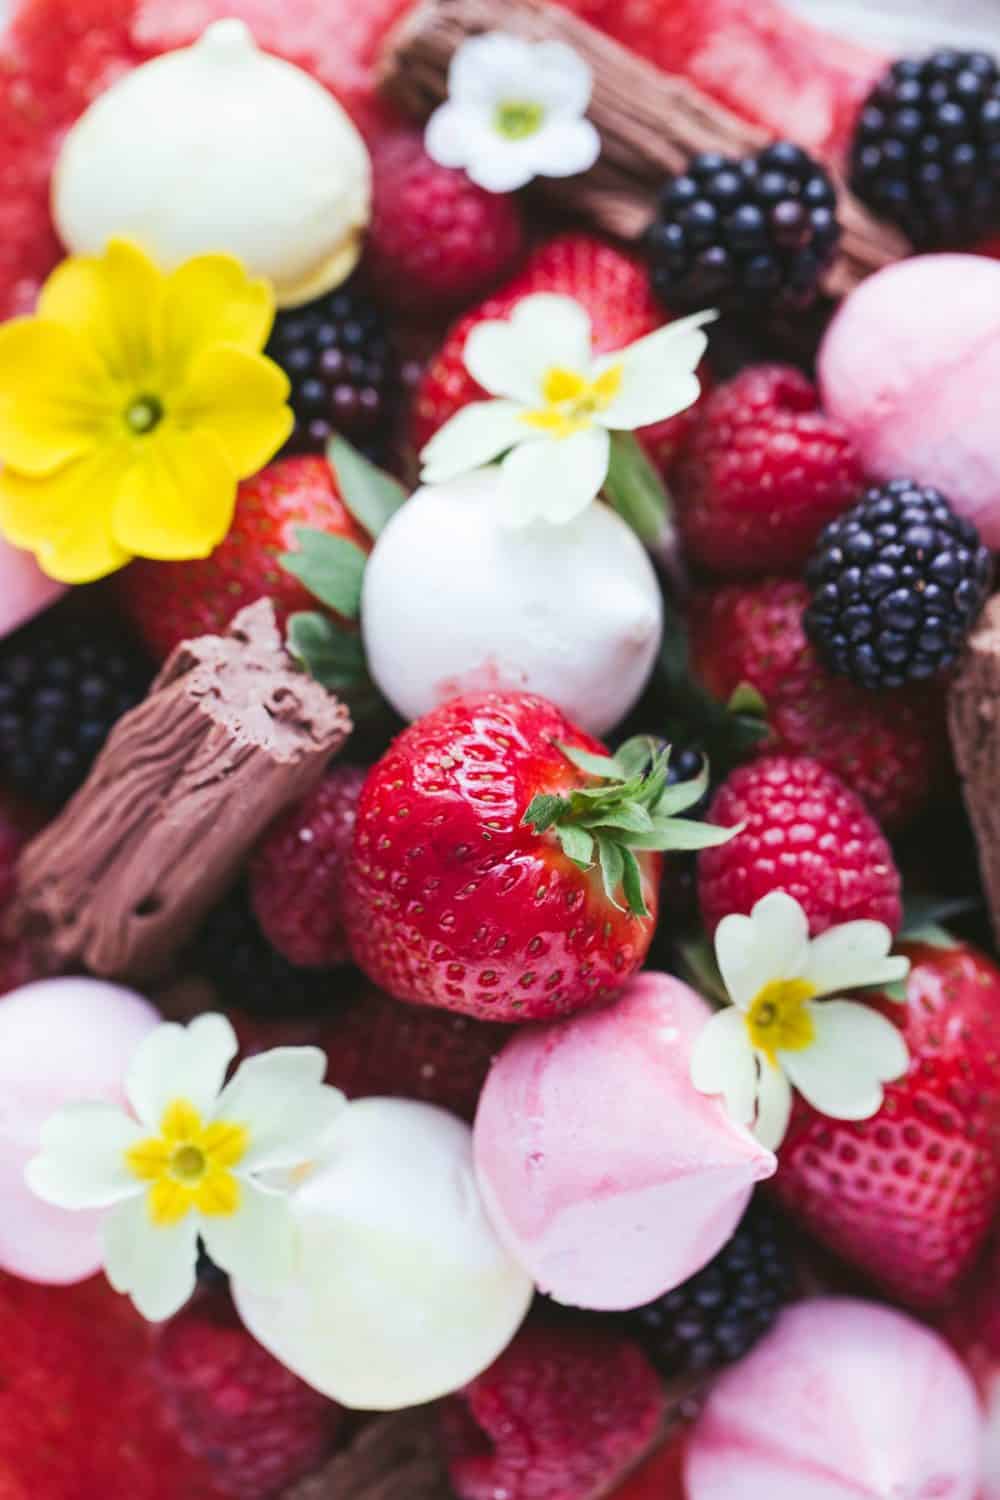 Strawberries, blackberries, raspberries, mini meringues, chocolate flakes and flowers. 